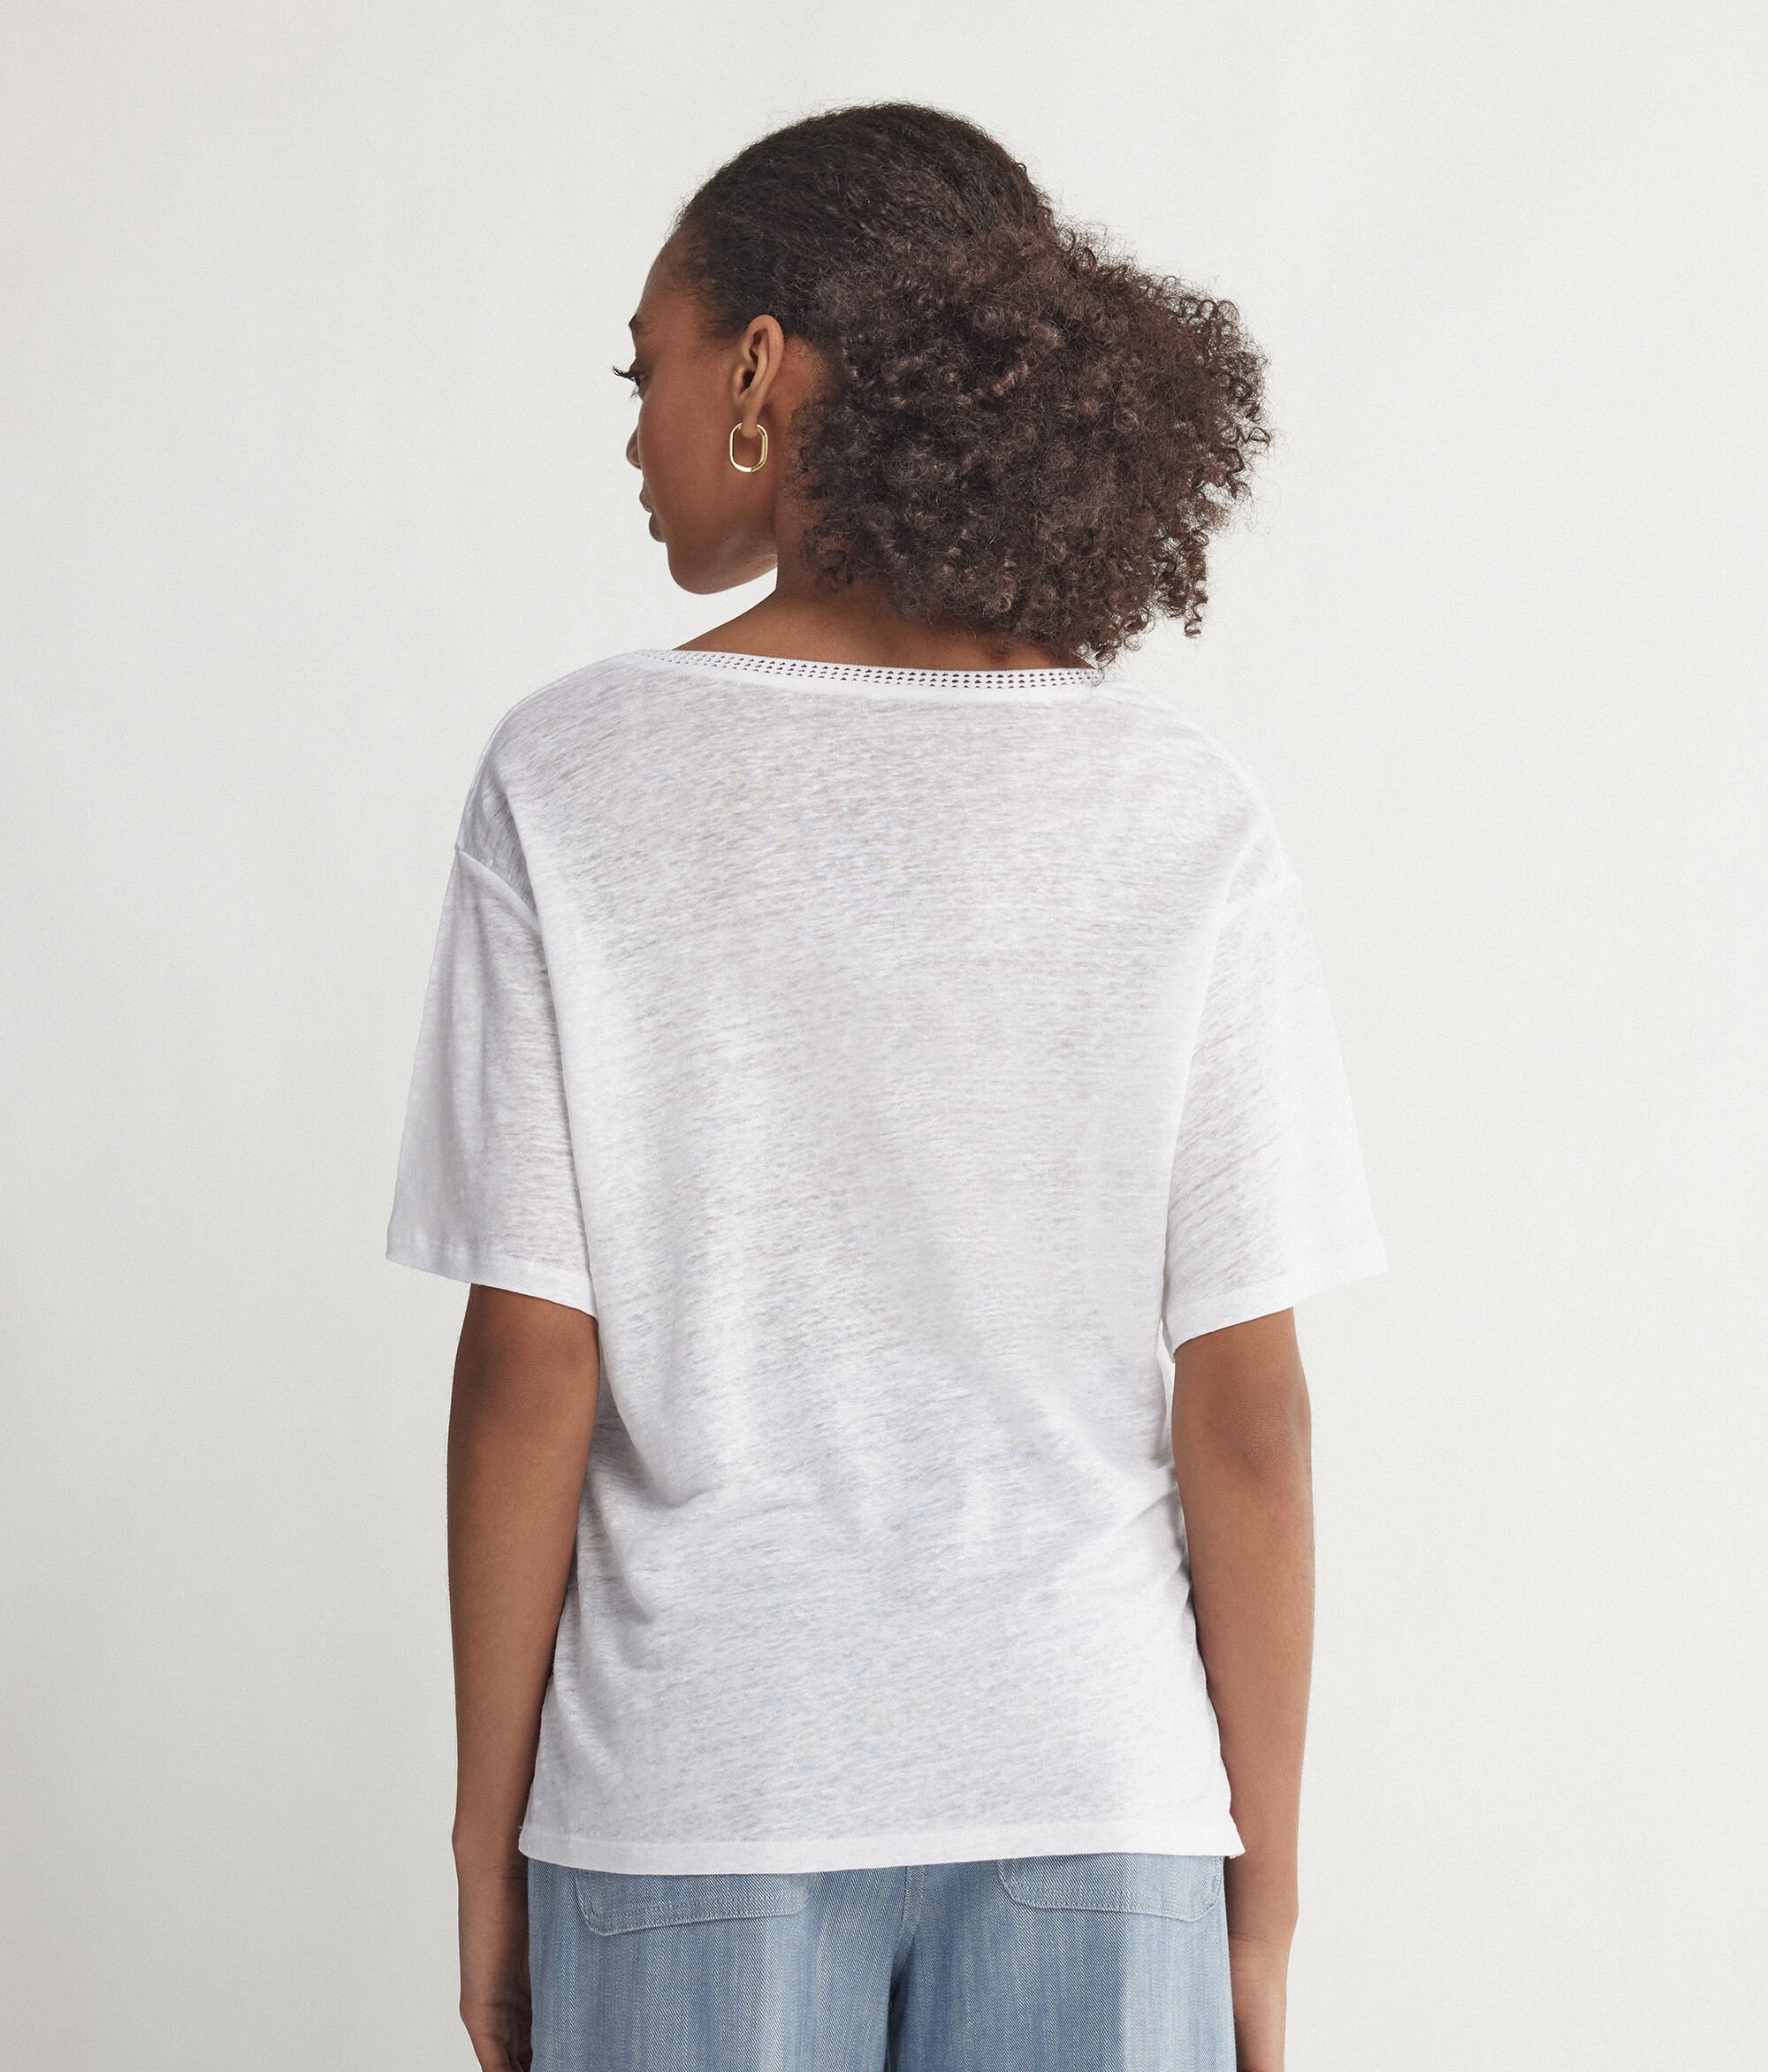 Camiseta con cuello de pico de lino con bordes de redecilla